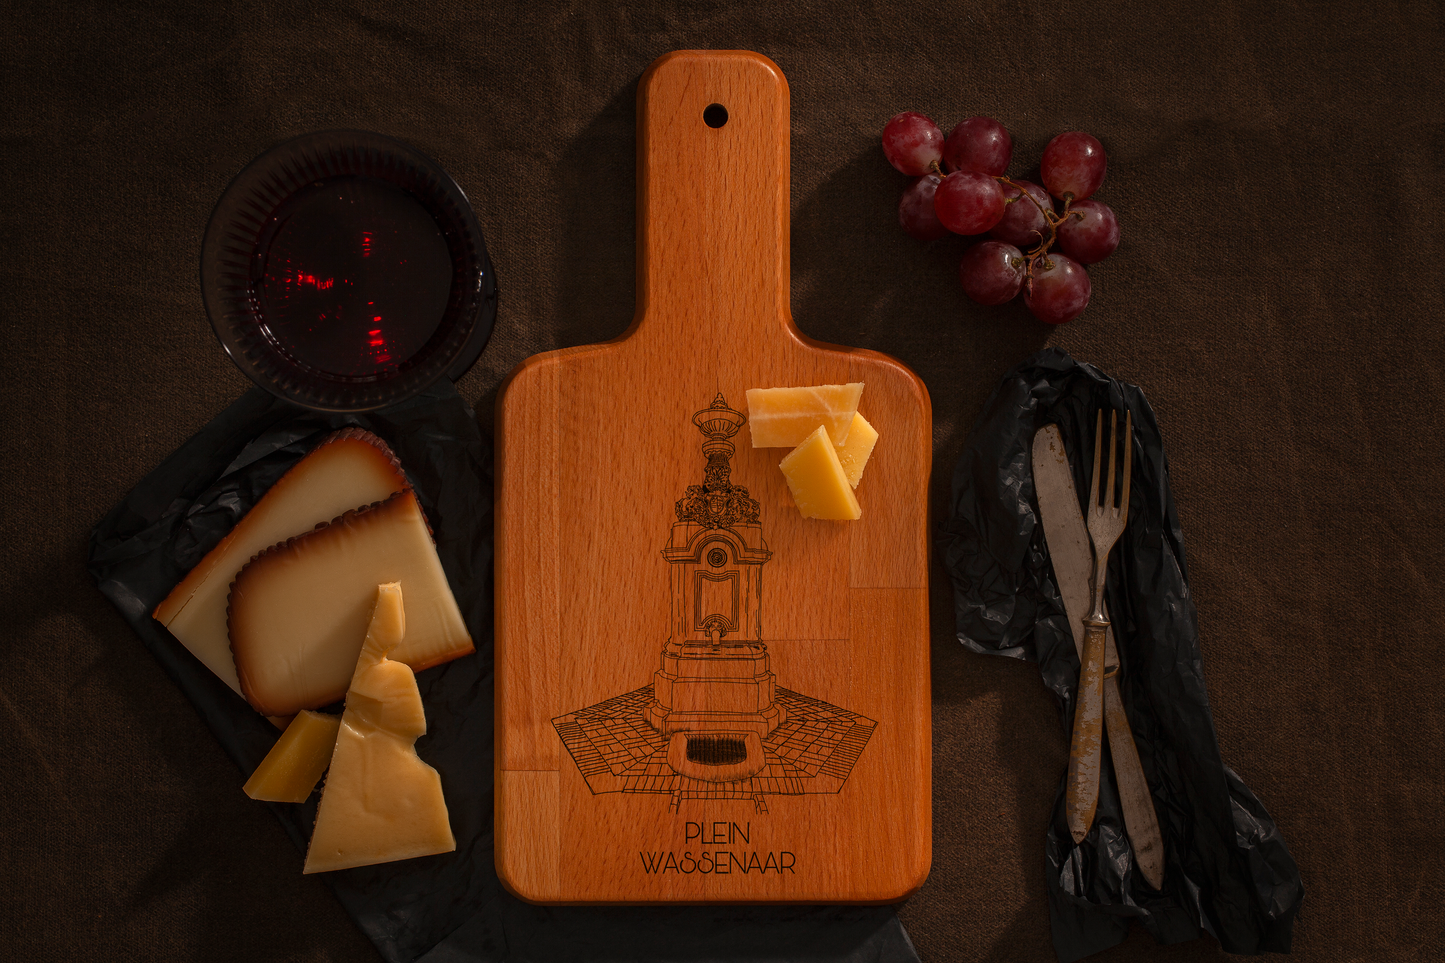 Wassenaar, Plein, cheese board, with cheese